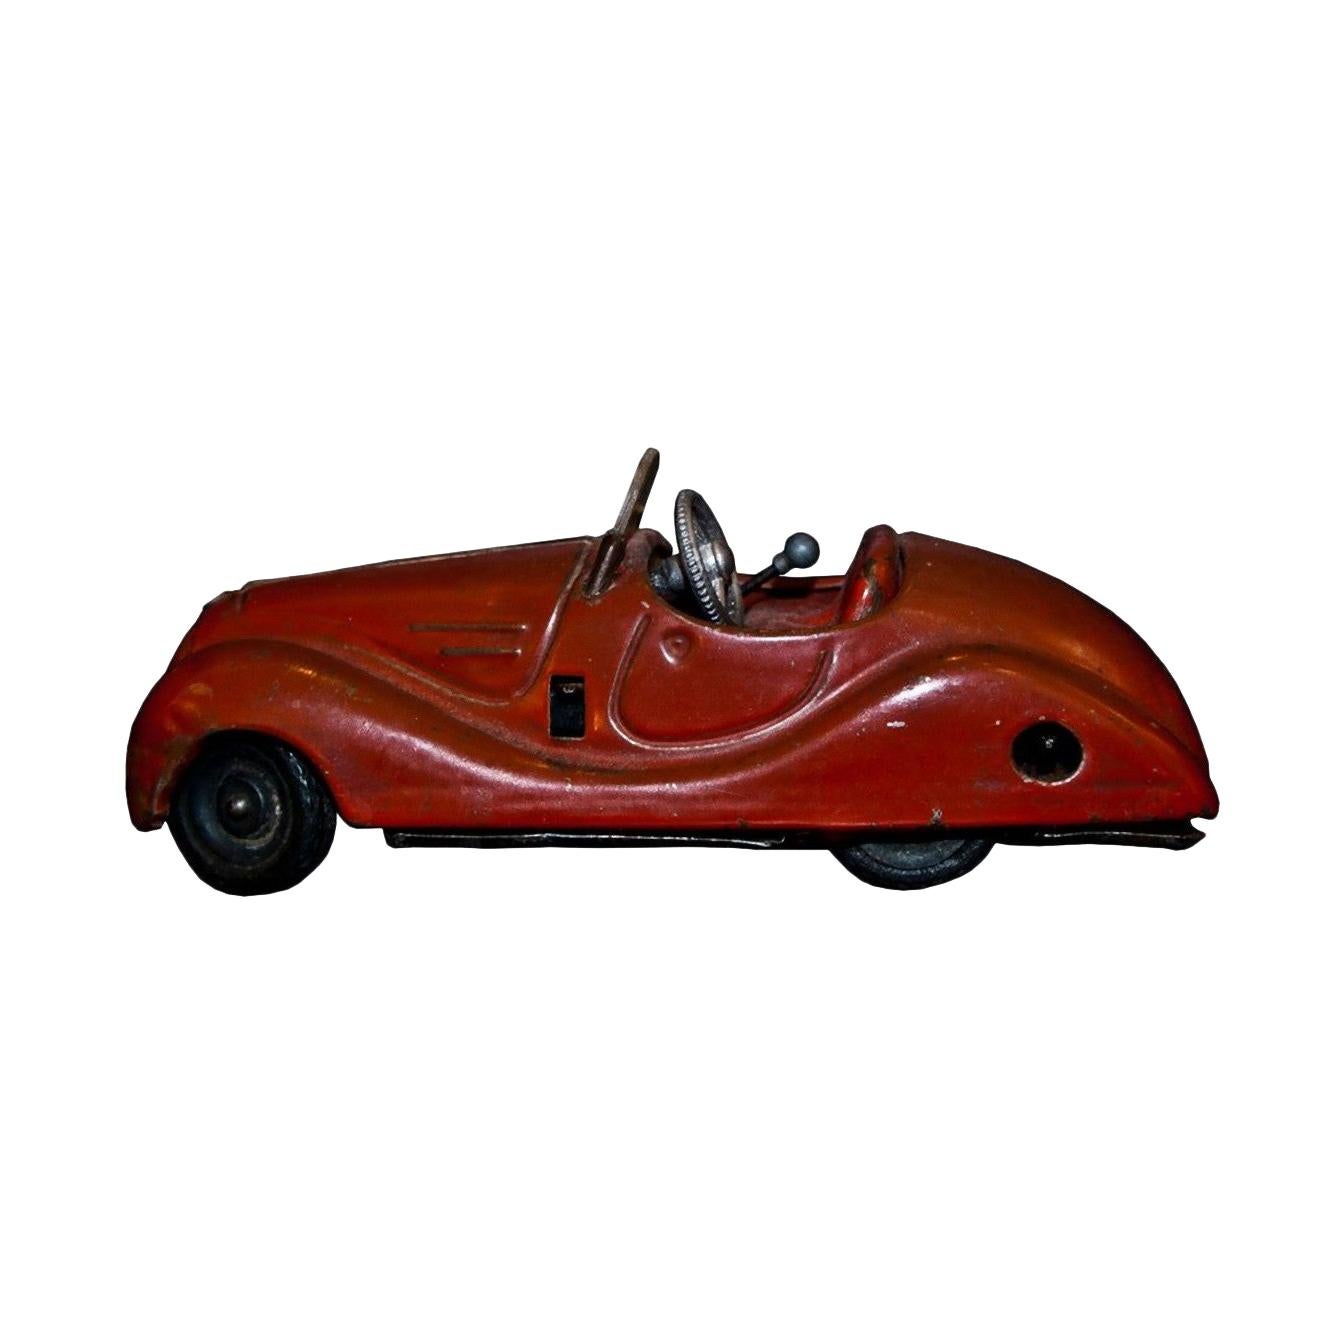 Vintage-Spielzeug, Schuco Examico 4001 Auto, 1950er Jahre